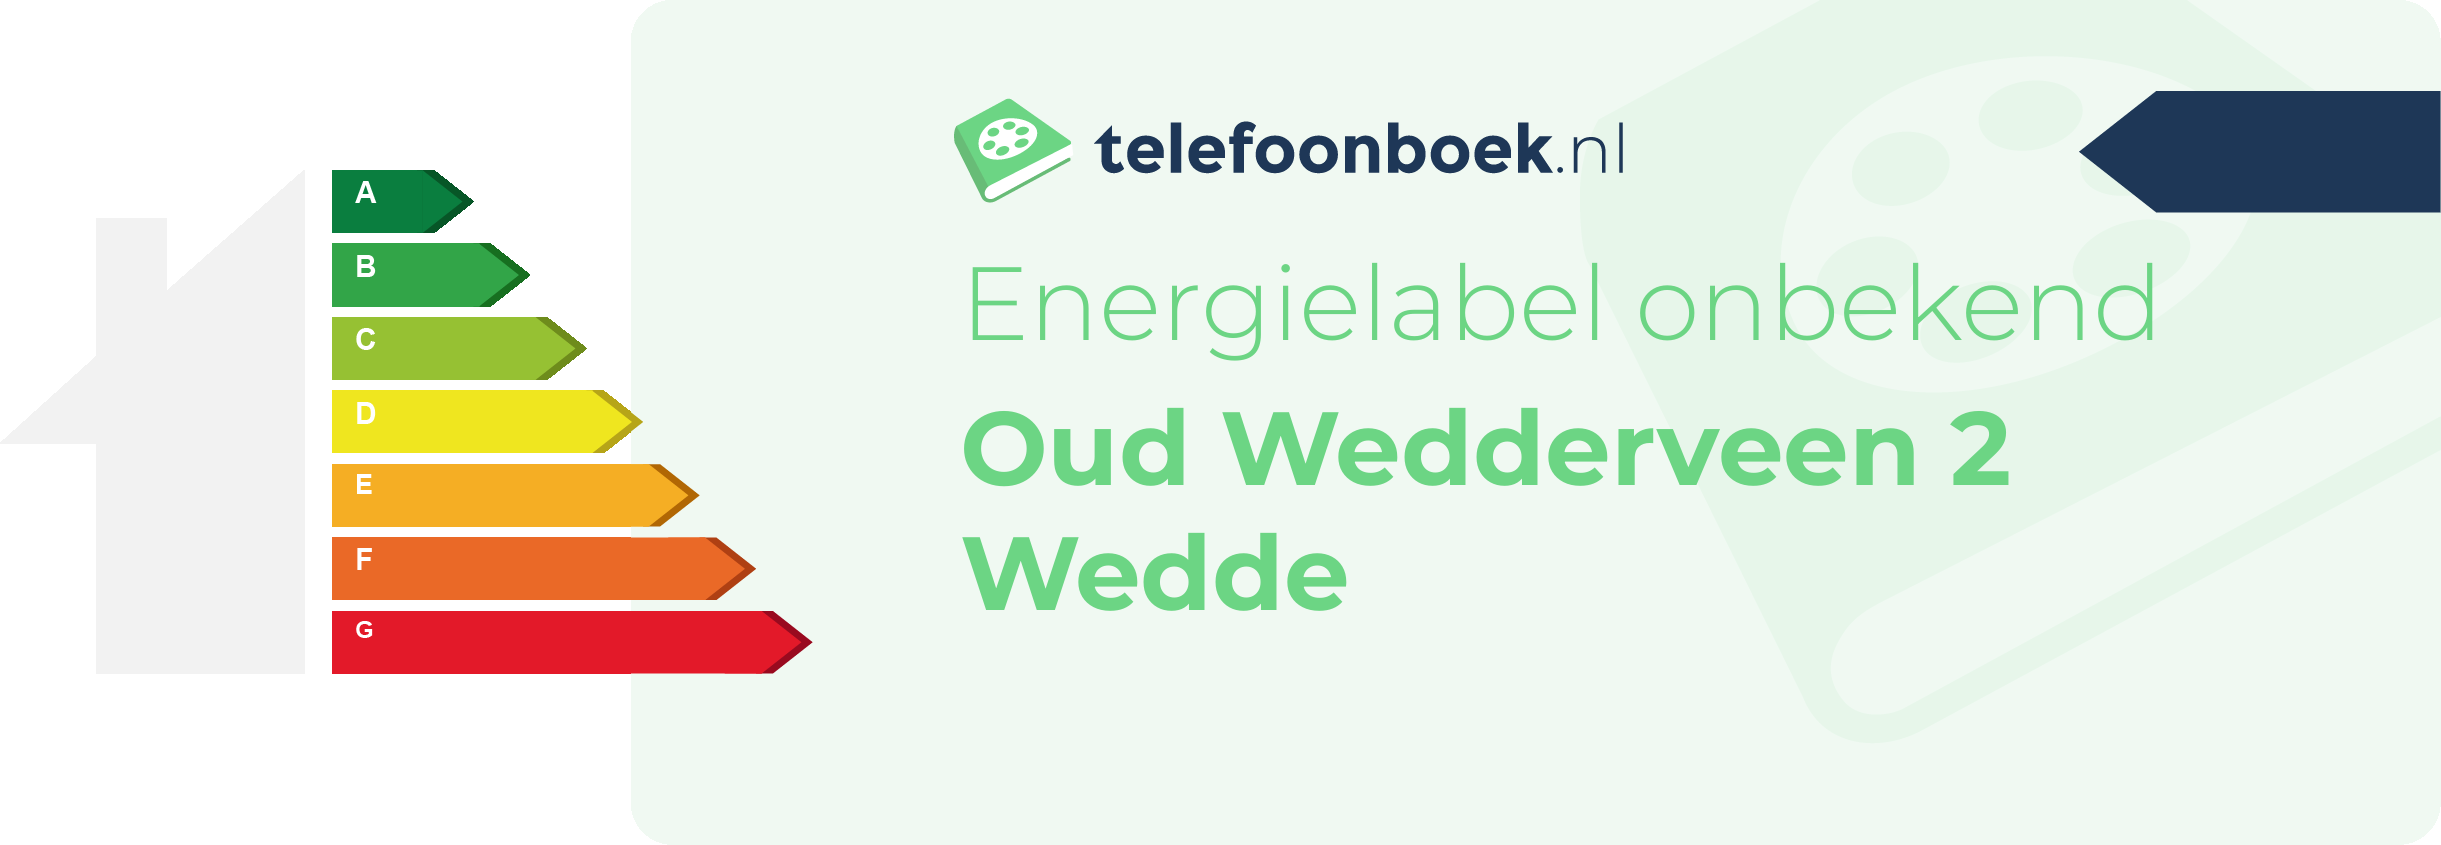 Energielabel Oud Wedderveen 2 Wedde